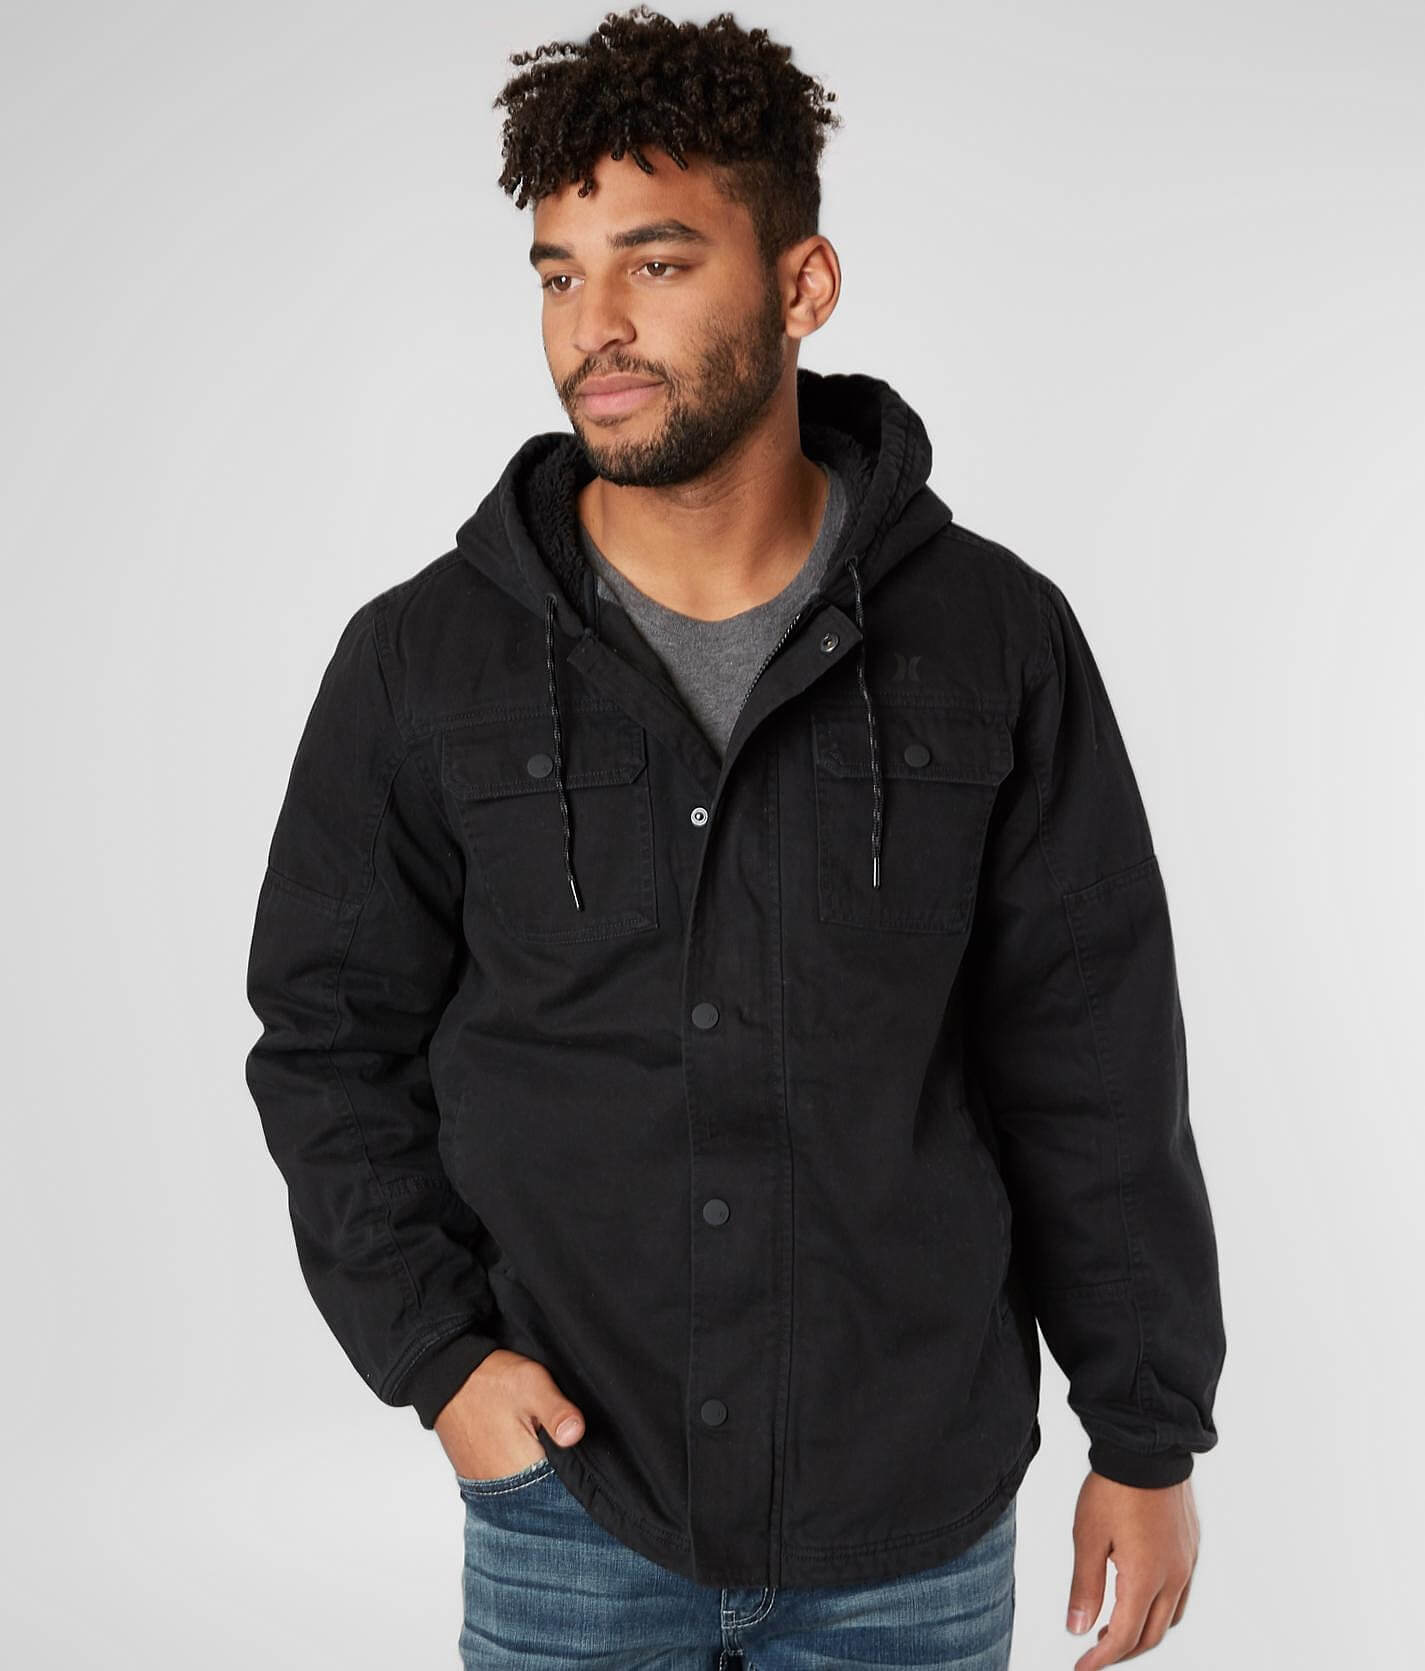 hurley men's outdoor hooded jacket